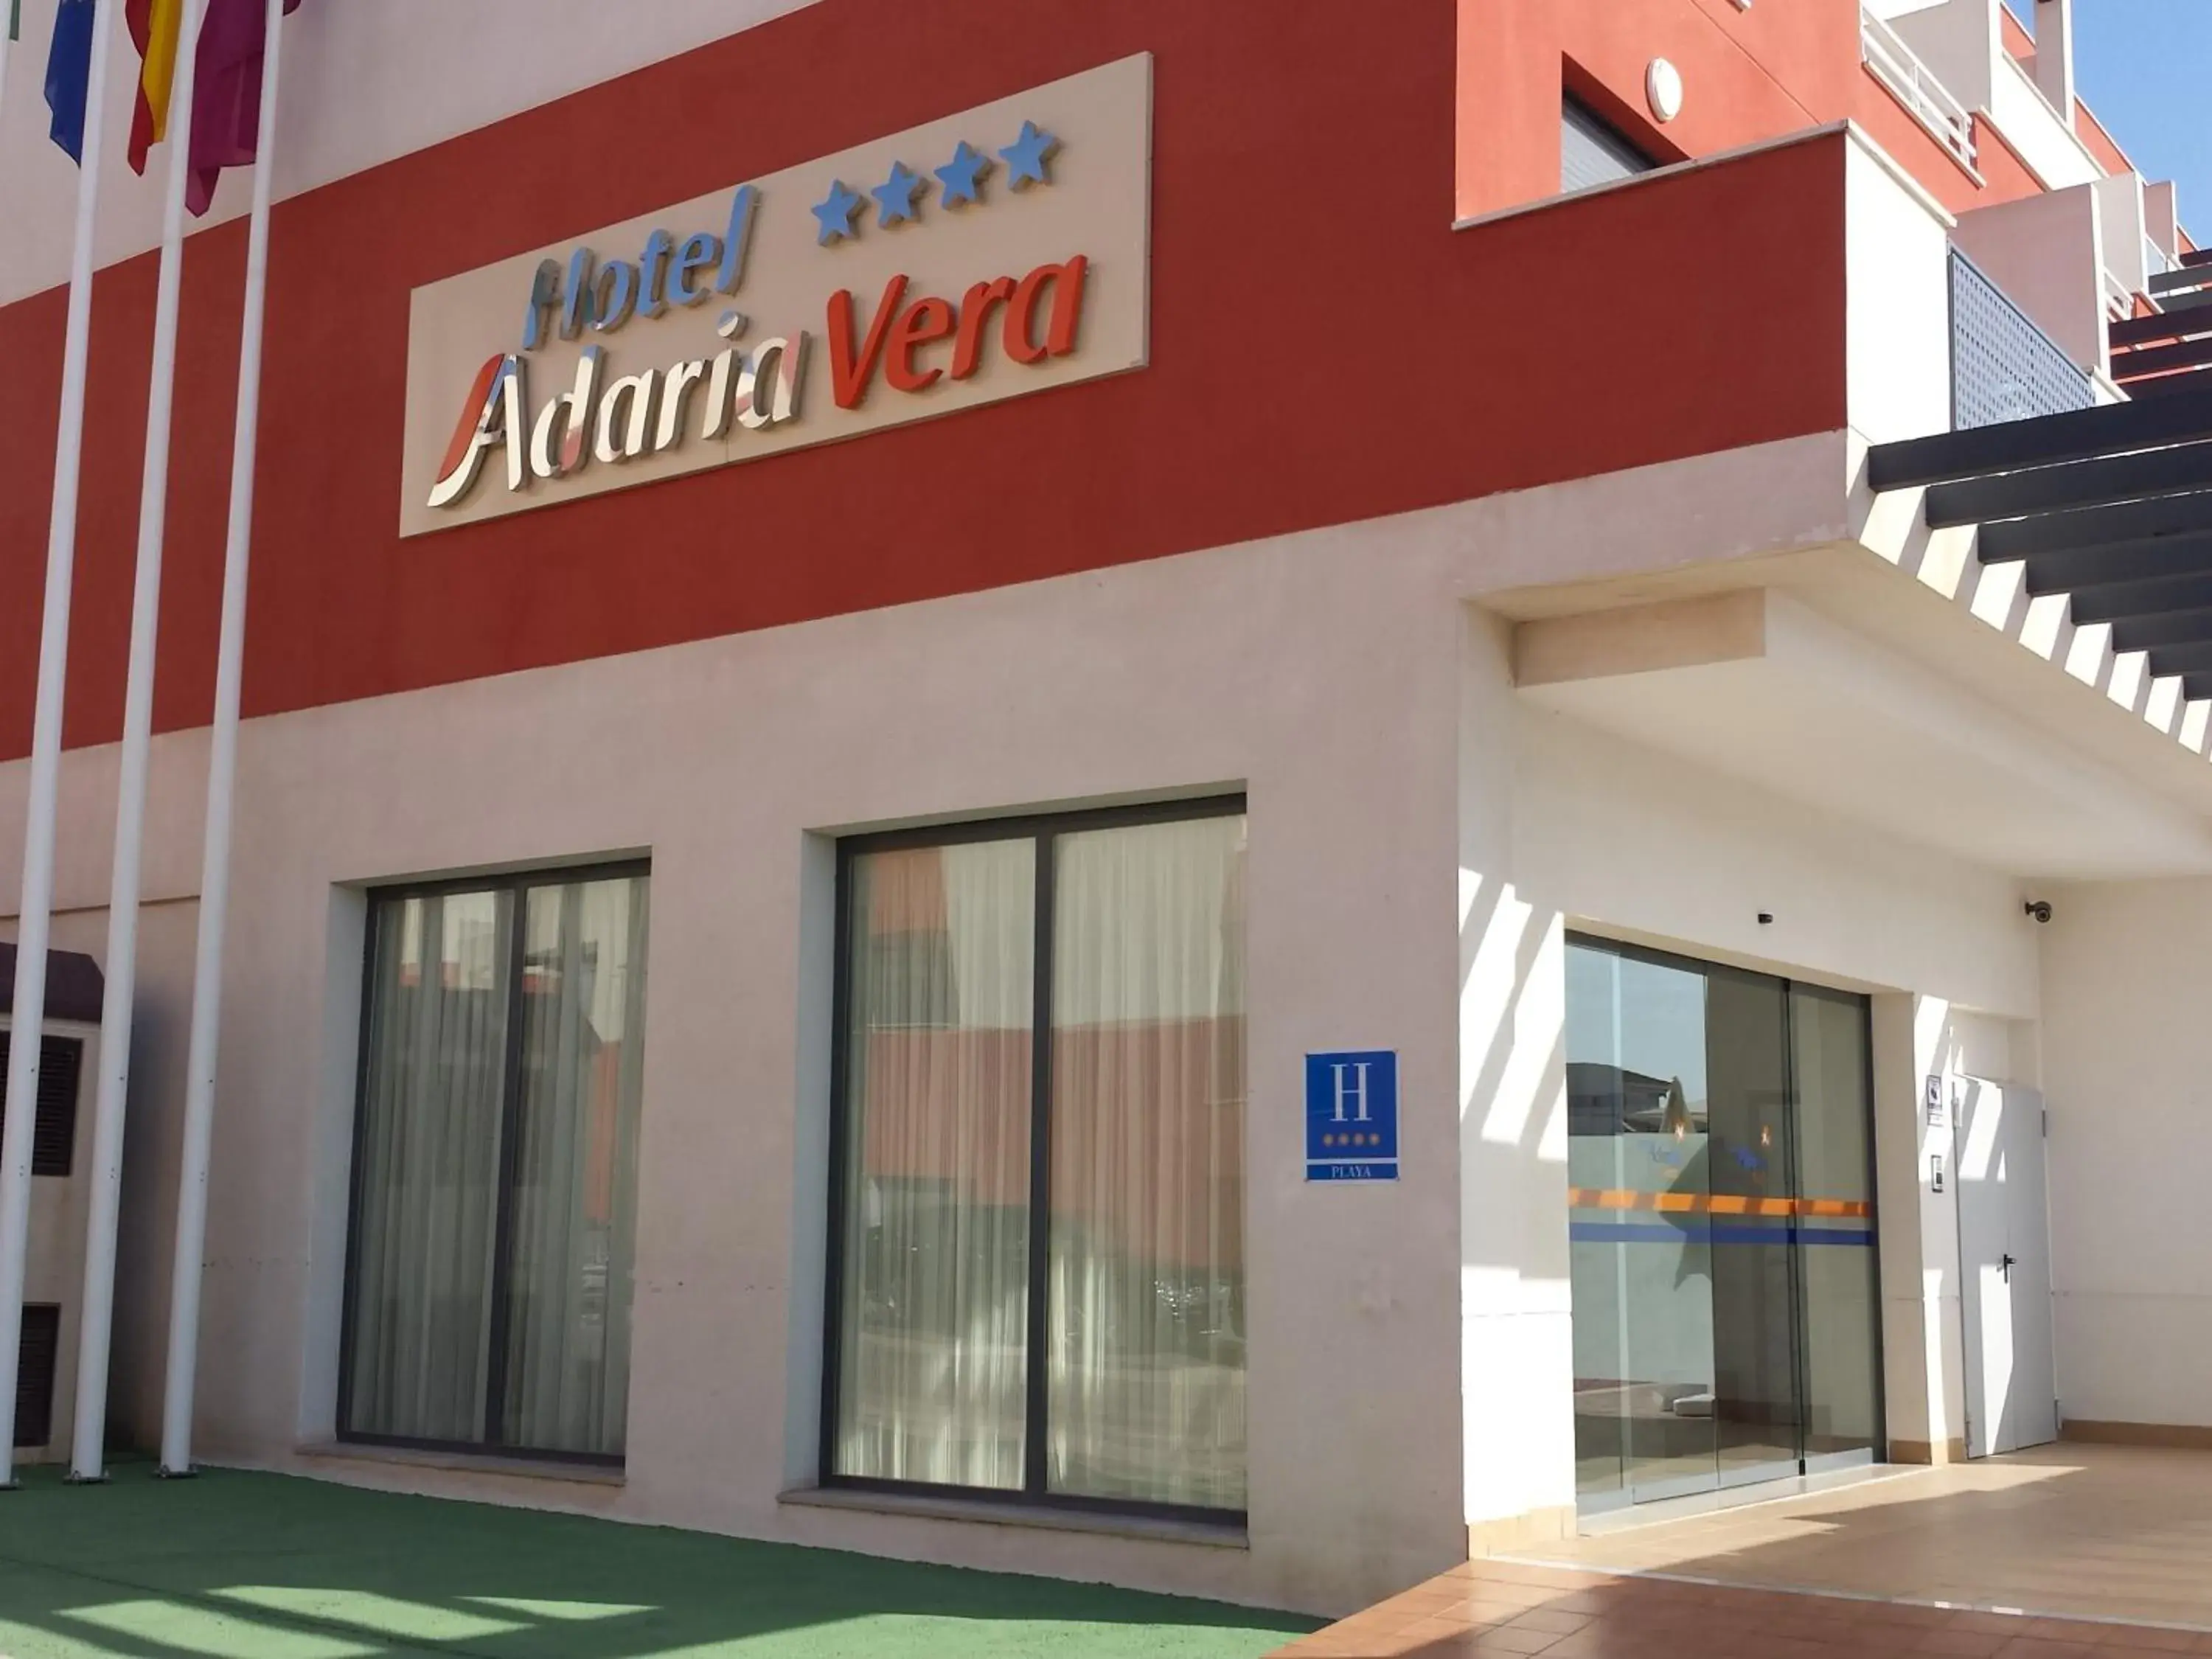 Facade/entrance in Hotel Adaria Vera